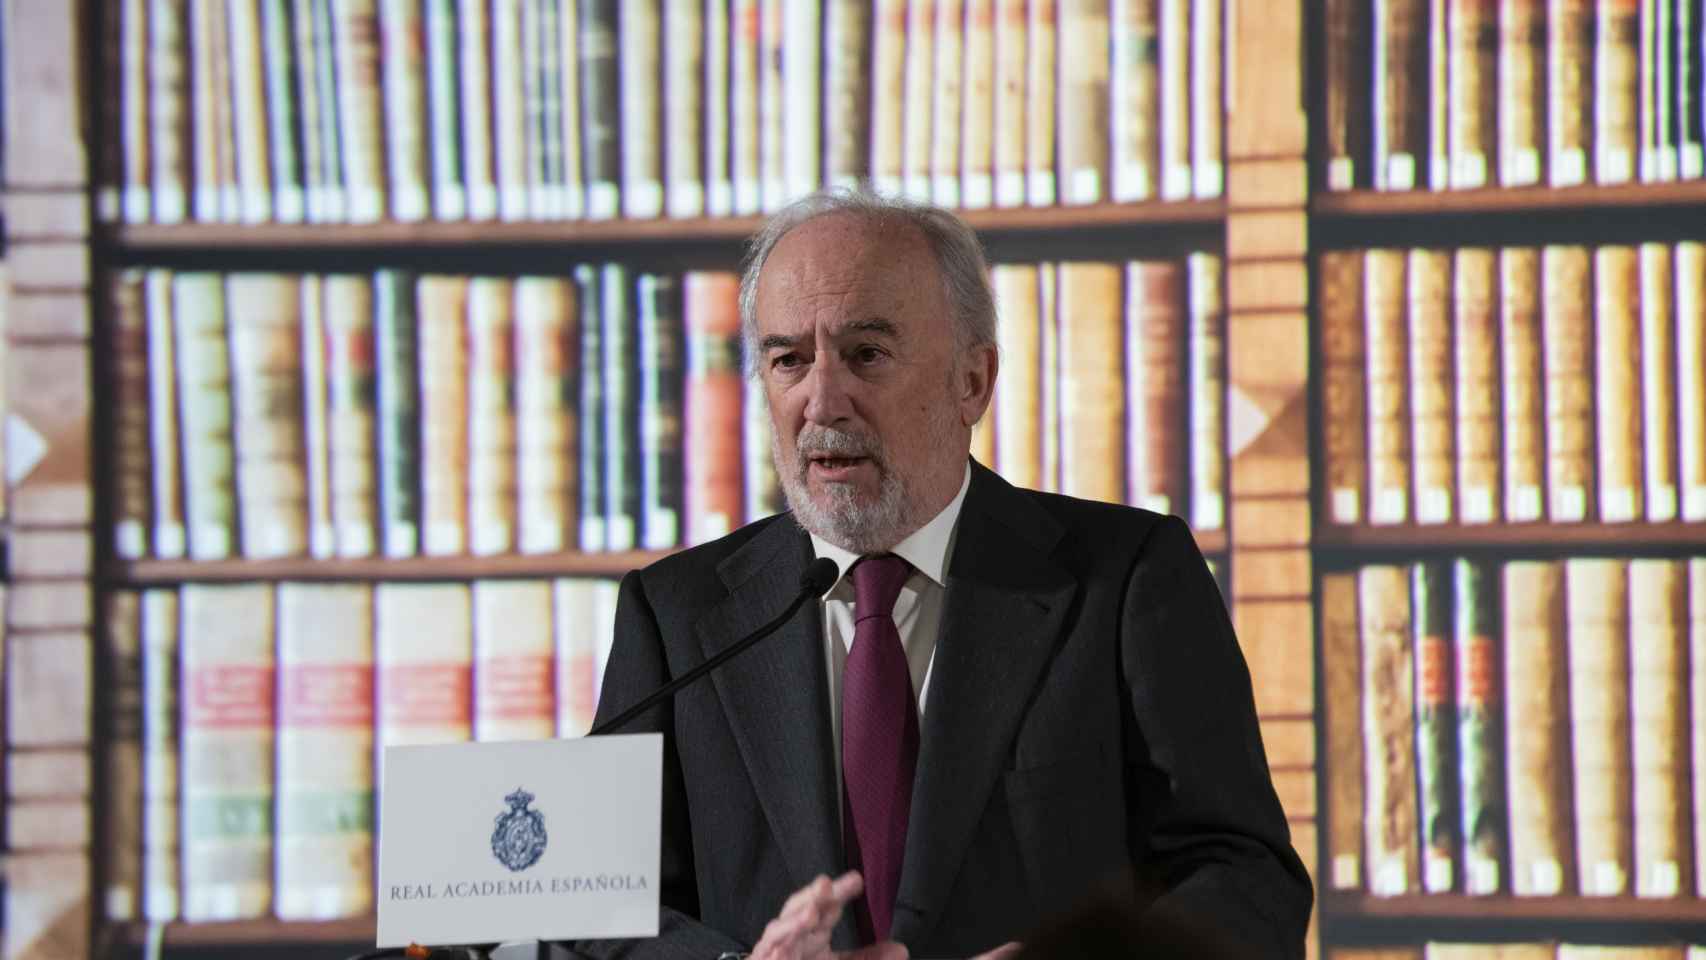 Santiago Muñoz Machado, director de la Real Academia Española, en la rueda de prensa de presentación de la Biblioteca Digital de la RAE